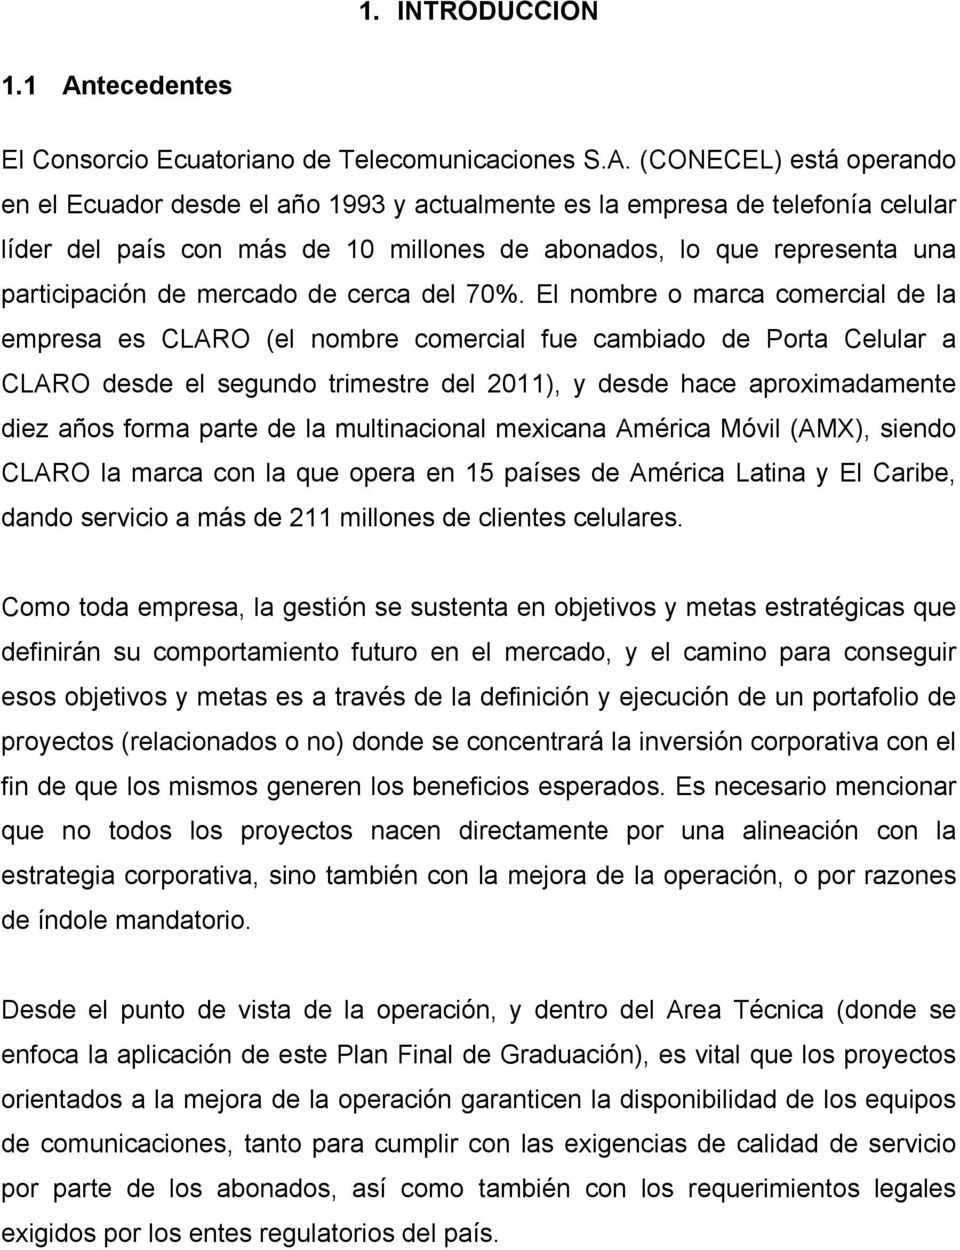 (CONECEL) está operando en el Ecuador desde el año 1993 y actualmente es la empresa de telefonía celular líder del país con más de 10 millones de abonados, lo que representa una participación de